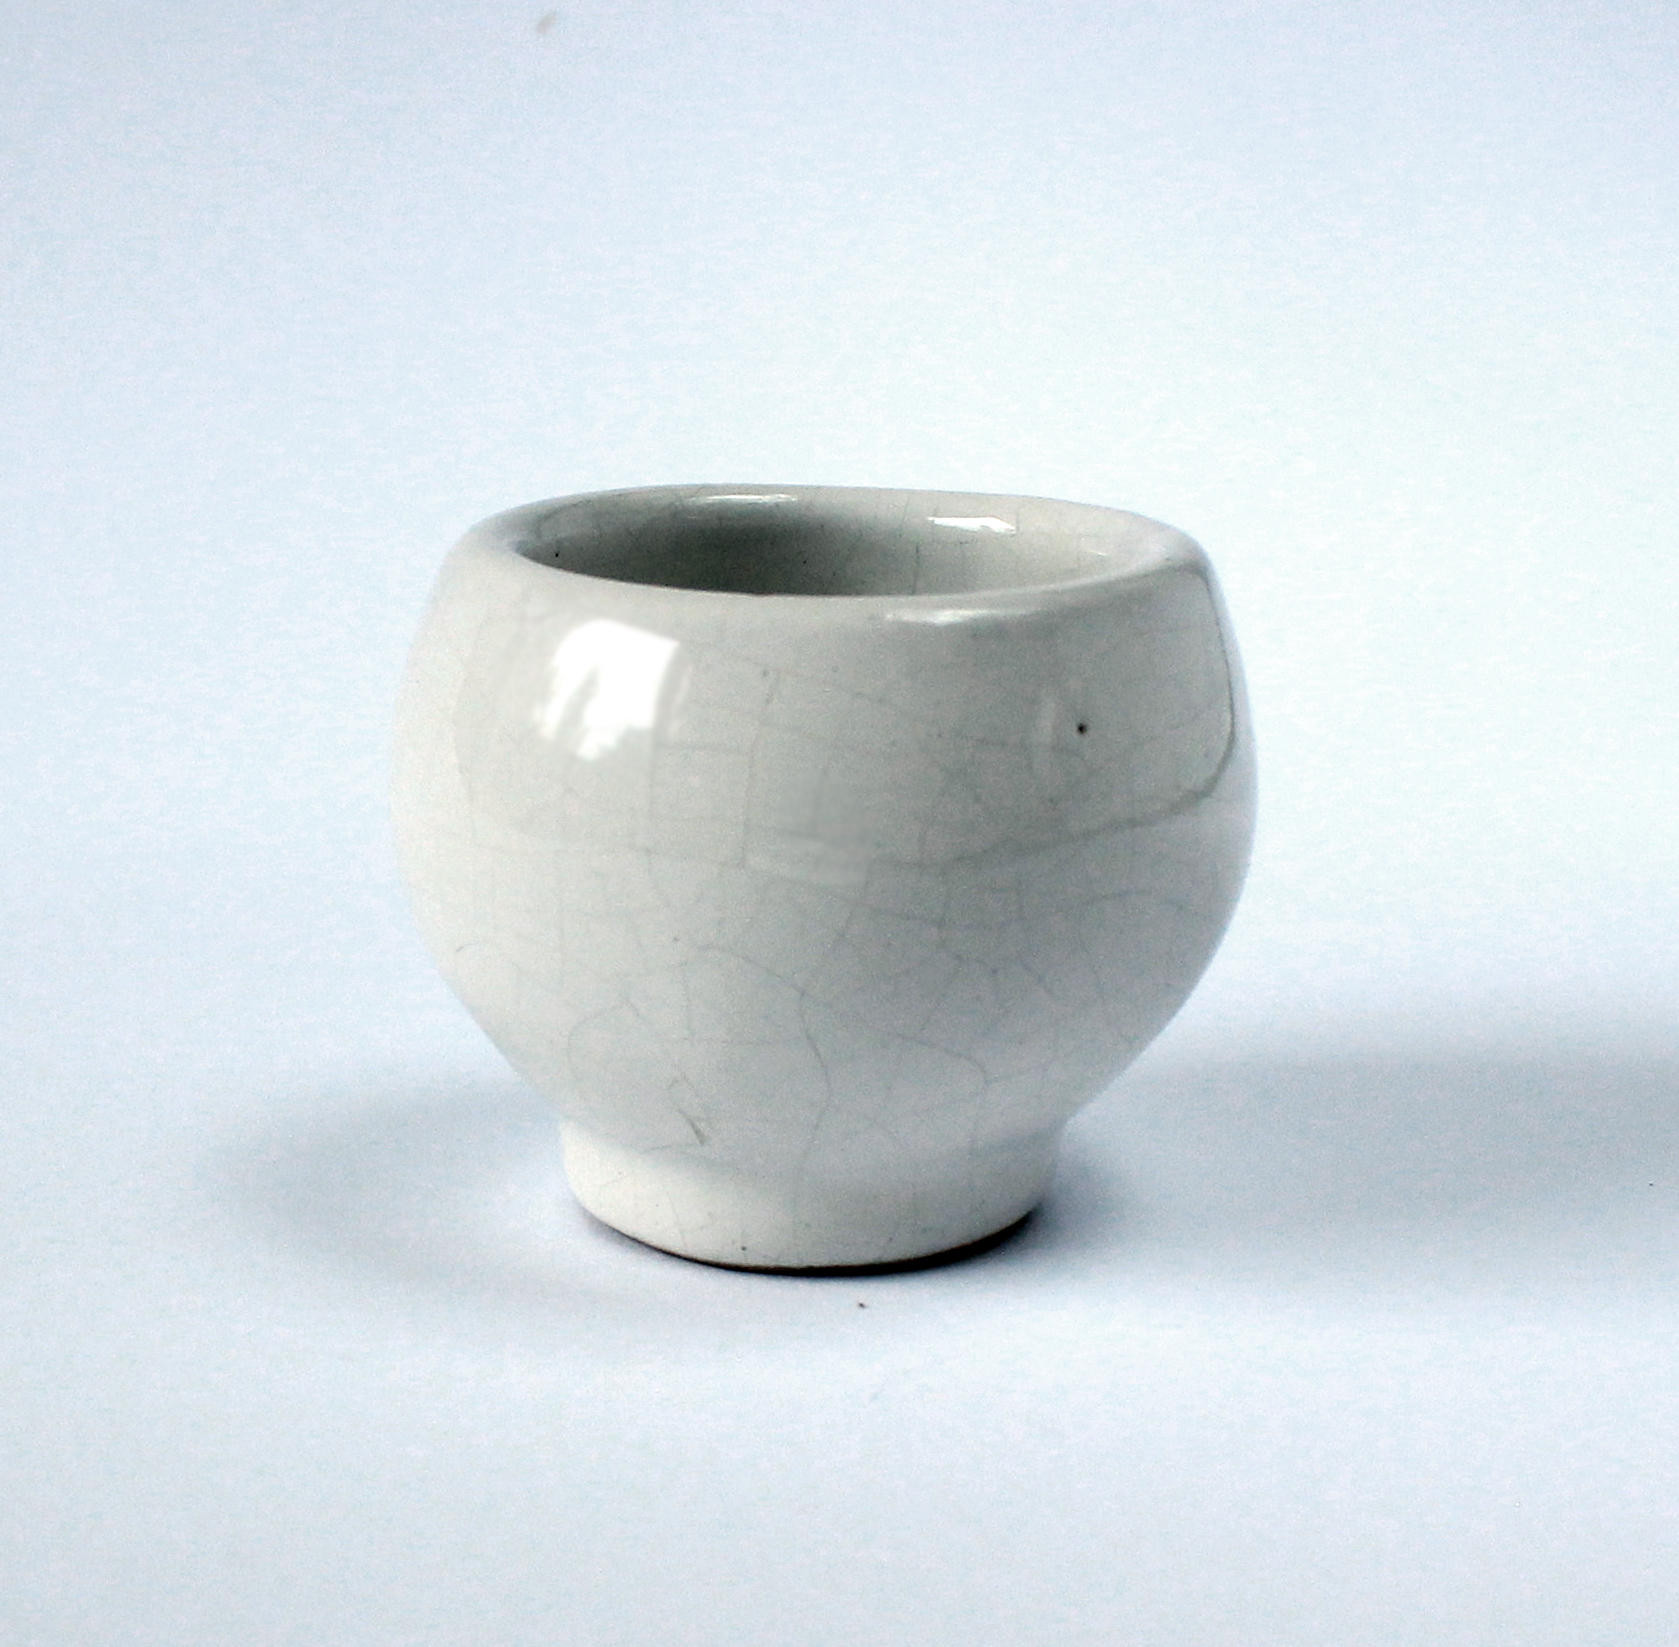 23 Amazing Antique White Porcelain Vases 2024 free download antique white porcelain vases of miniature white ceramic air planter mini vase tiny round with dc29fc294c28ezoom